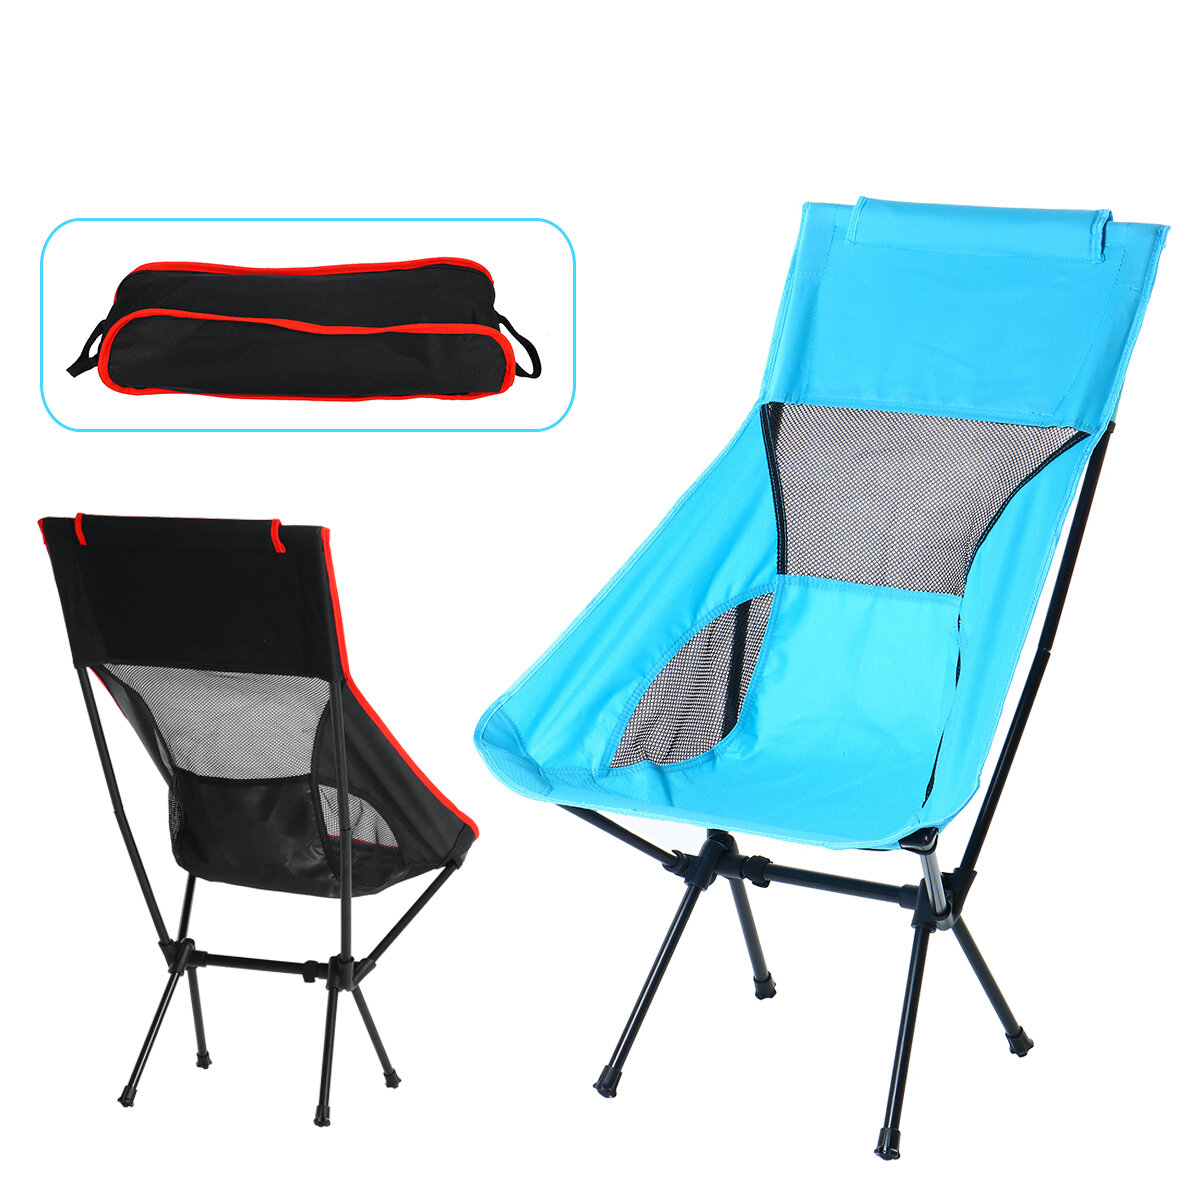 Outdoor Camping Stuhl Oxford Cloth Tragbare Klappverlängerung Camping Ultralight Stuhl Sitz zum Angeln Picknick BBQ Beac